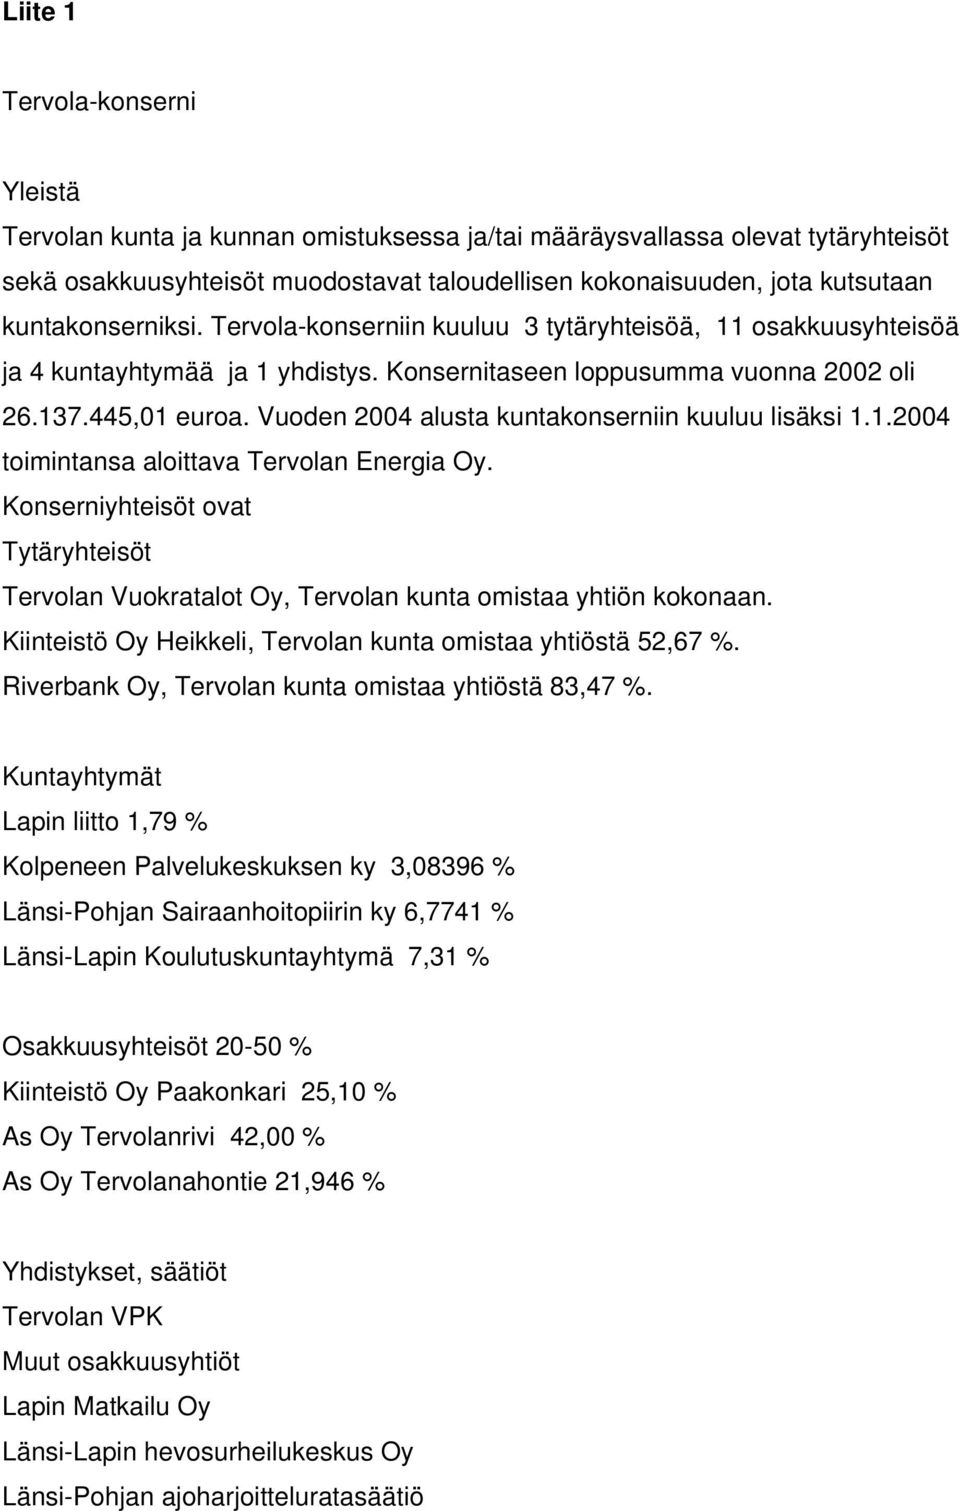 Vuoden 2004 alusta kuntakonserniin kuuluu lisäksi 1.1.2004 toimintansa aloittava Tervolan Energia Oy.